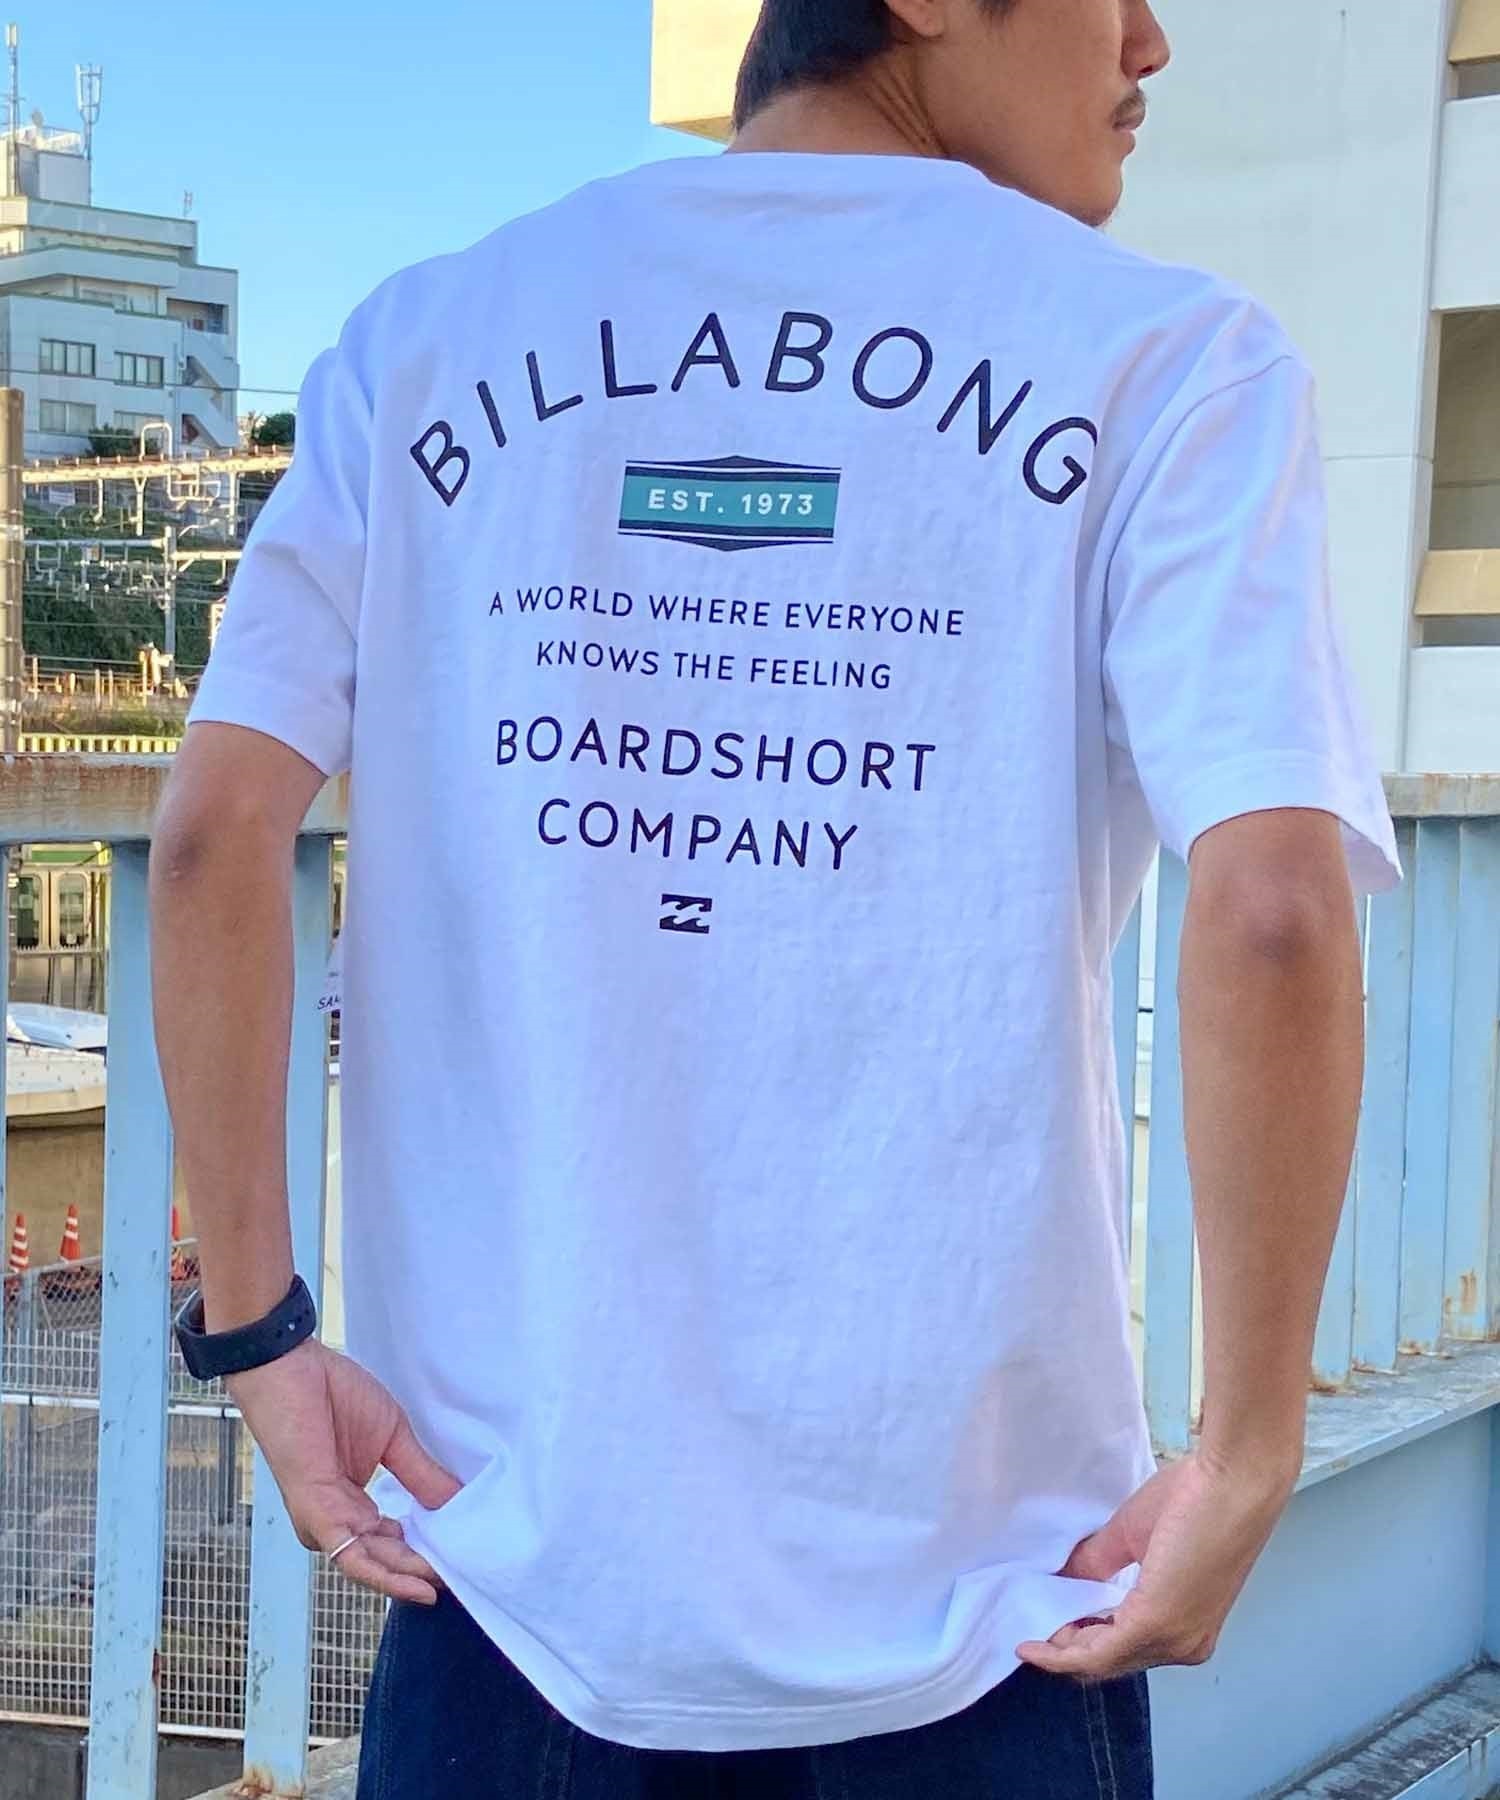 BILLABONG ビラボン PEAK Tシャツ 半袖 メンズ バックプリント クルーネック BE011-205(WHT-S)